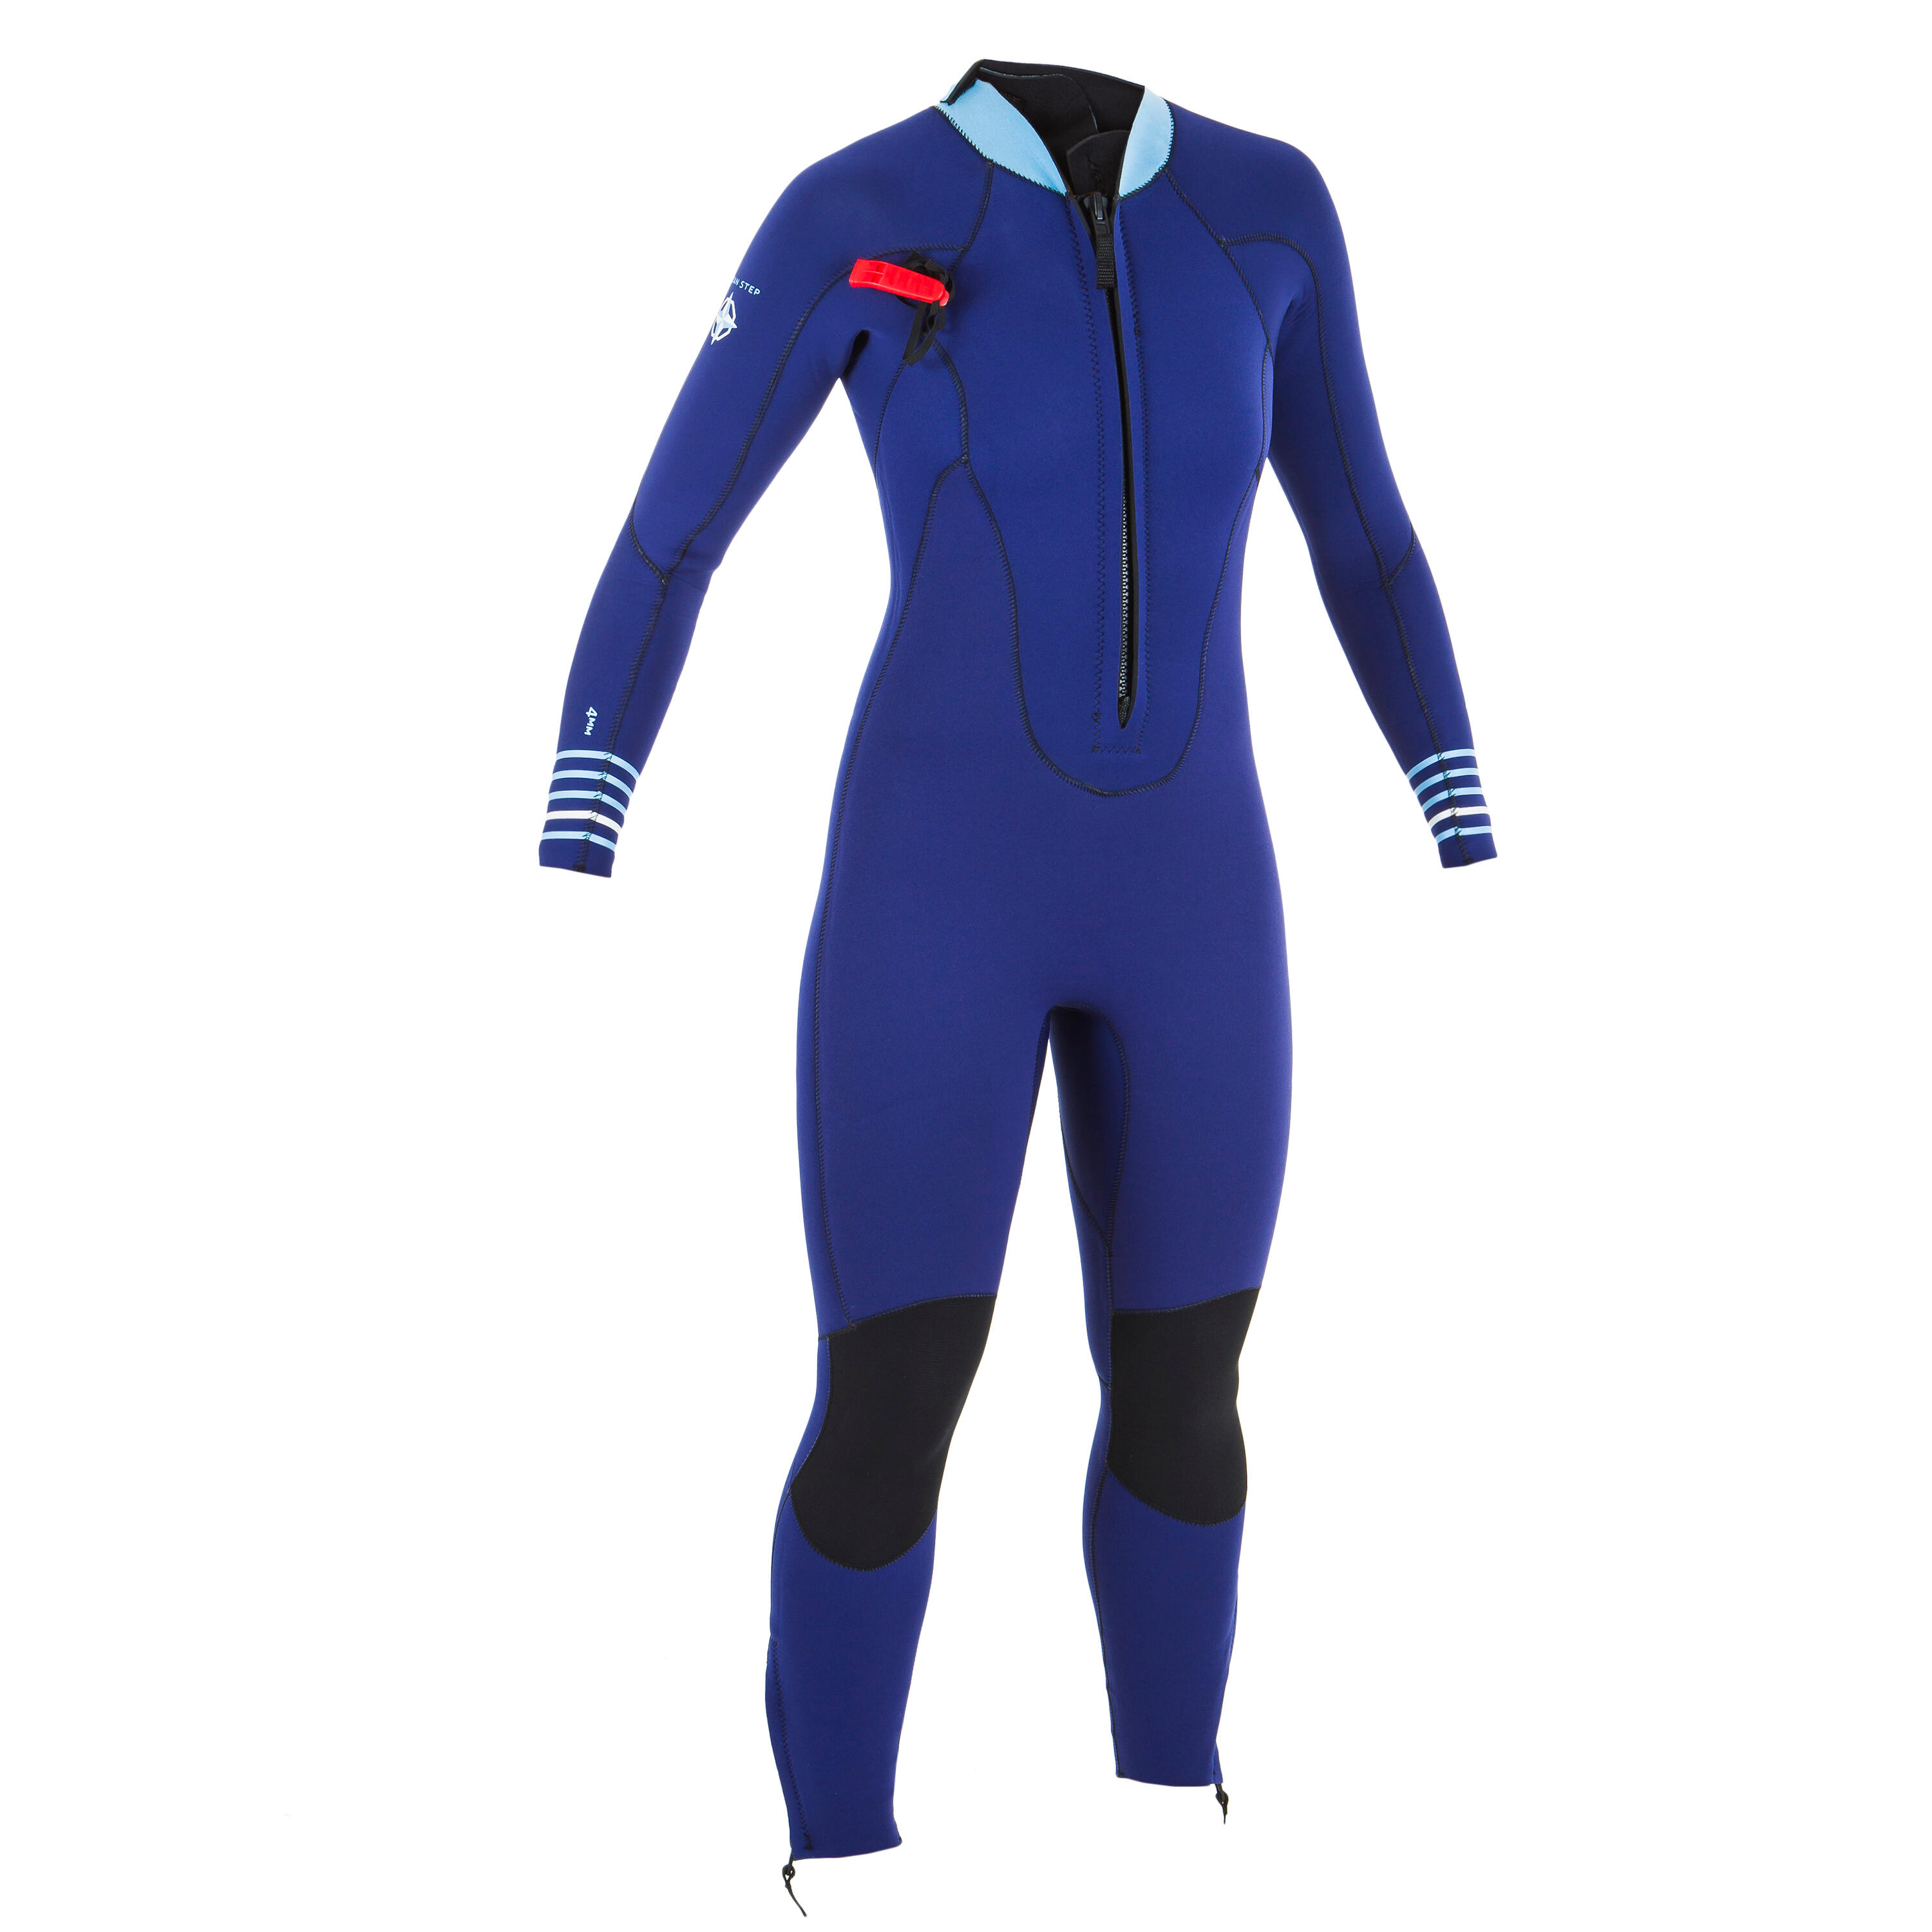 Women’s neoprene sea walking wetsuit 4/3 - blue 12/13